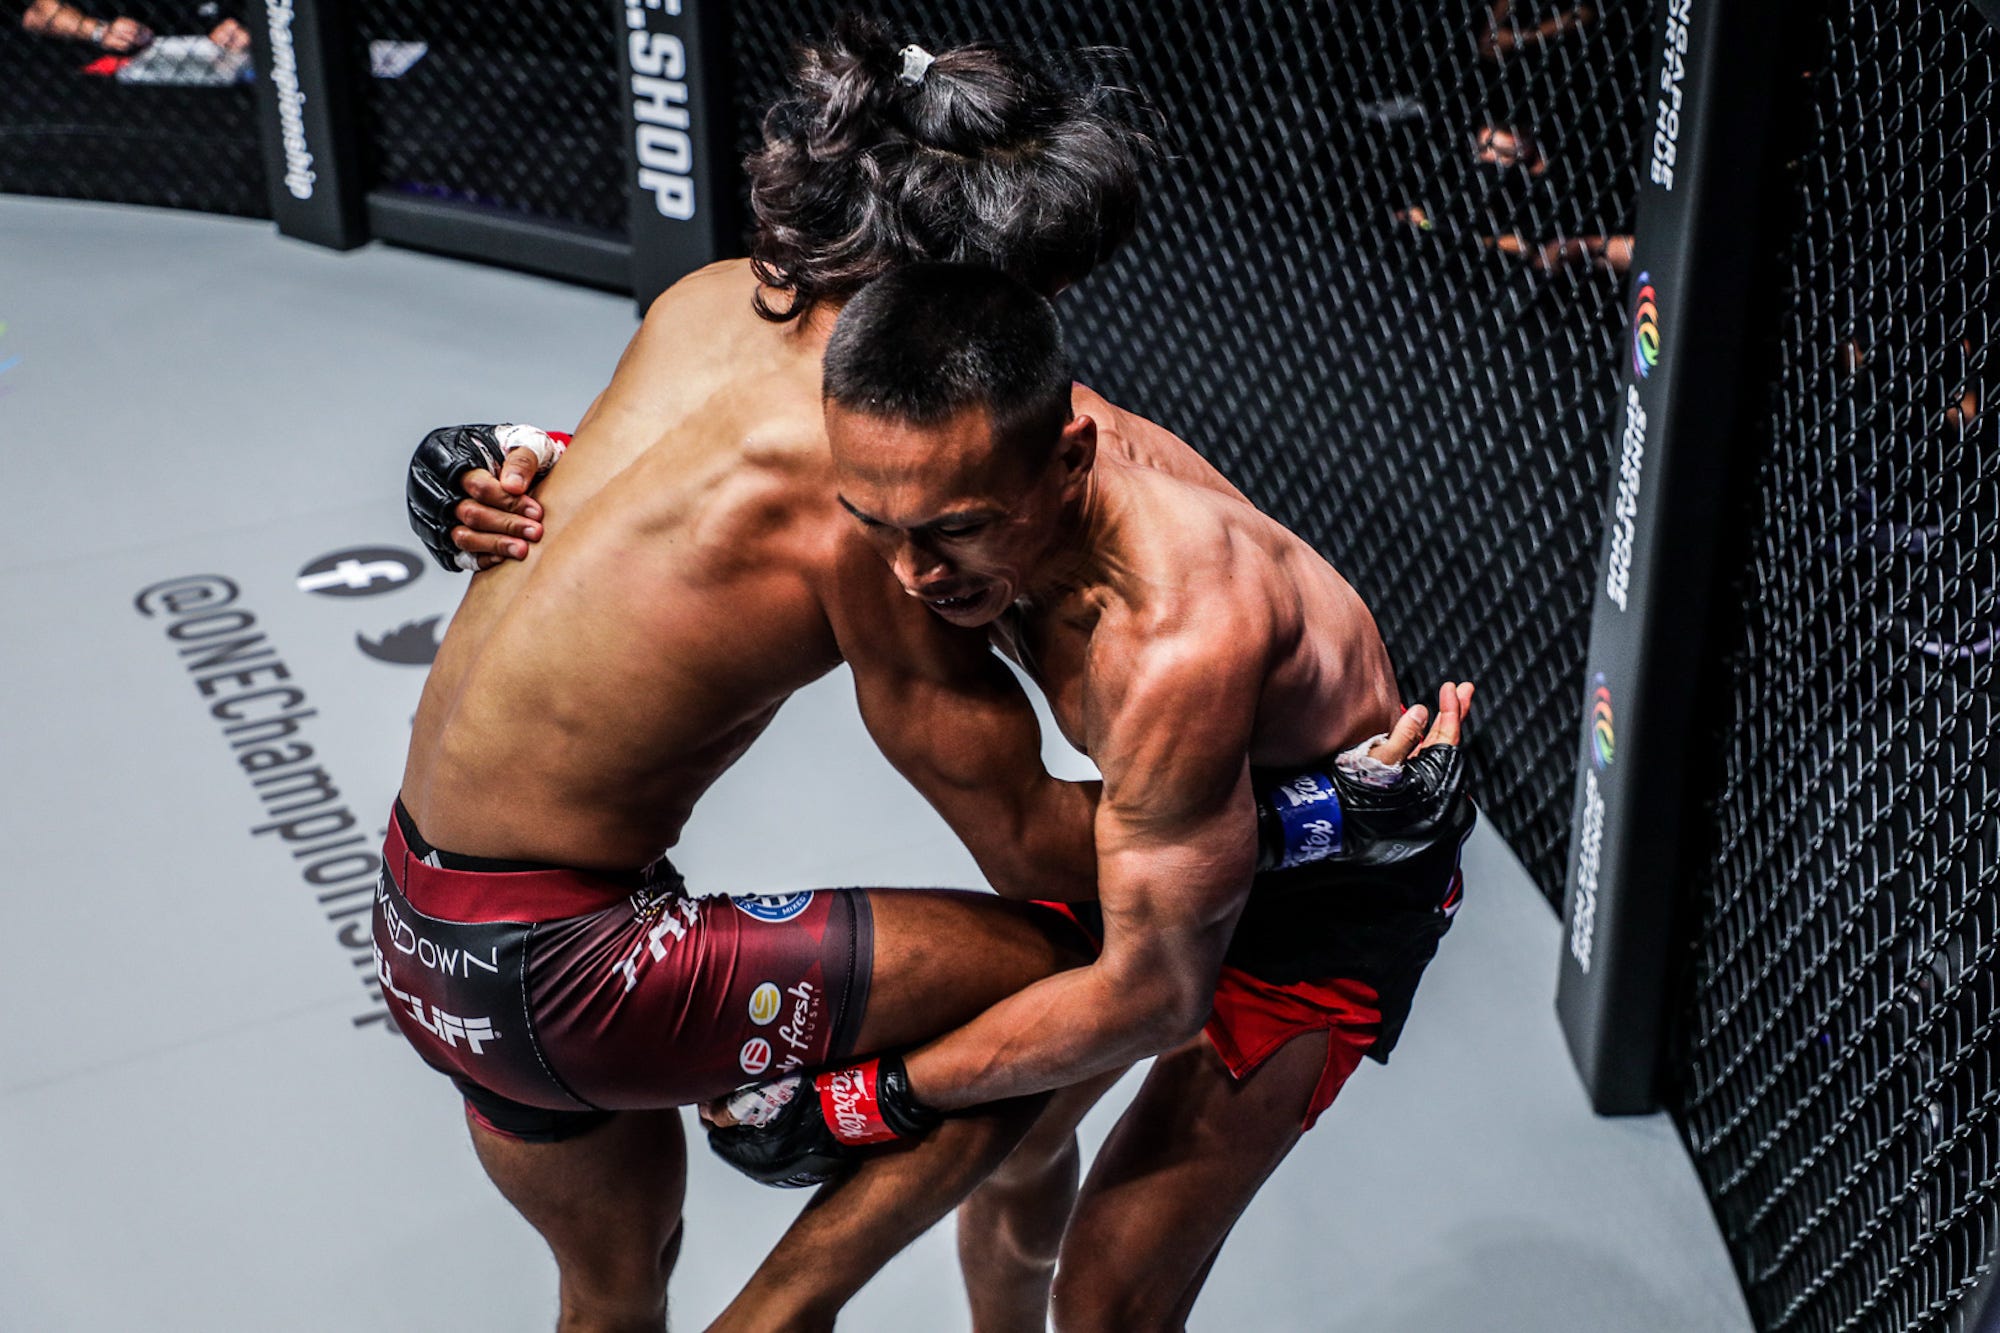 Der Kampf zwischen Sunoto und Tial Thang endete mit einem No Contest.